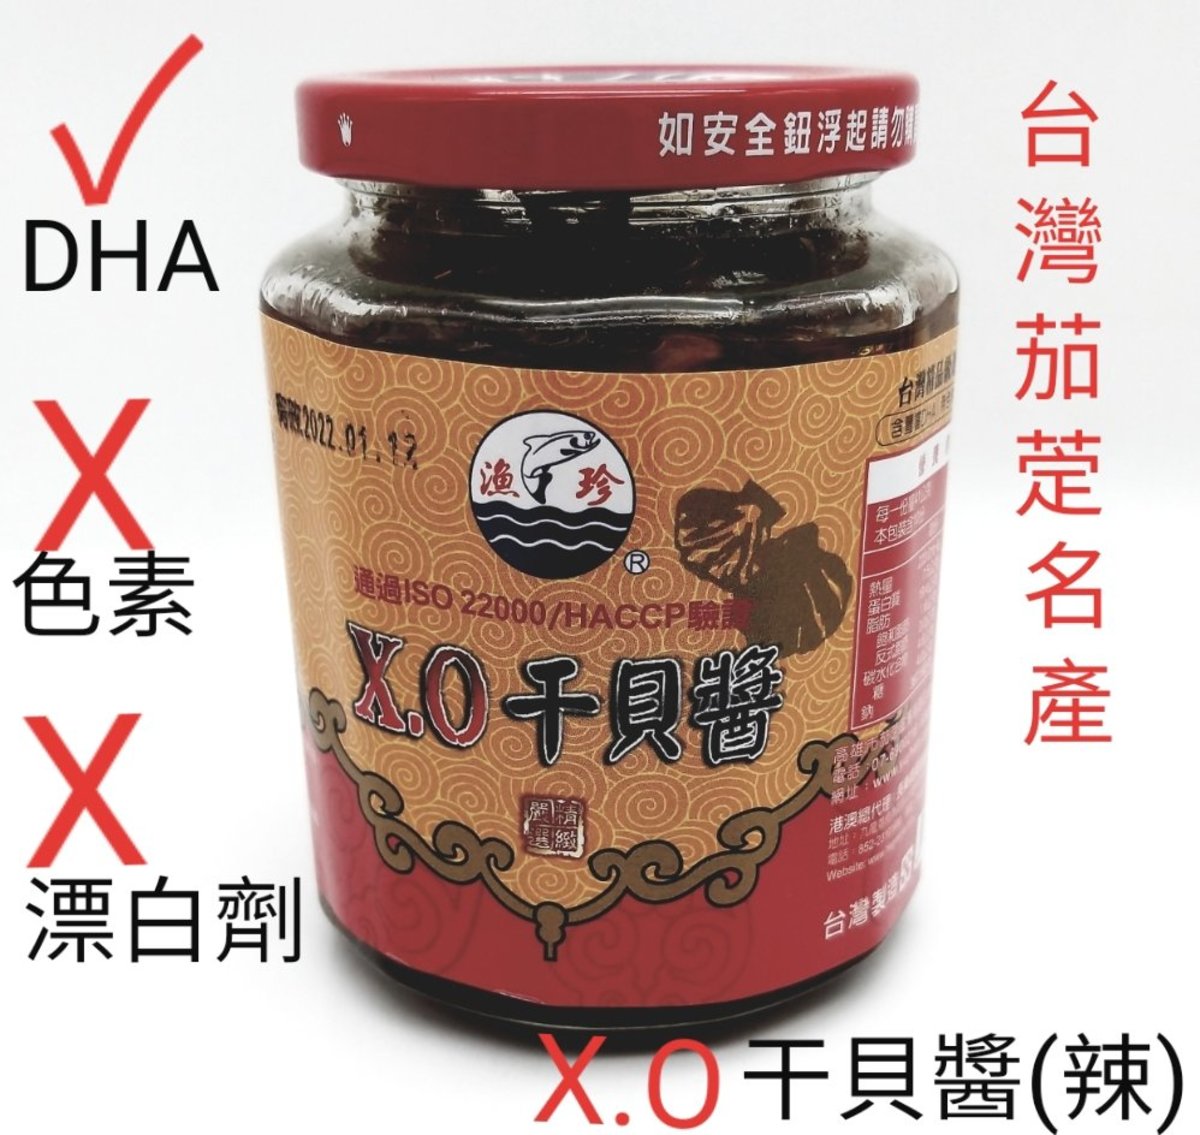 台灣XO干具醬(辣) 410g  不含色素, 無漂白劑. 含DHA